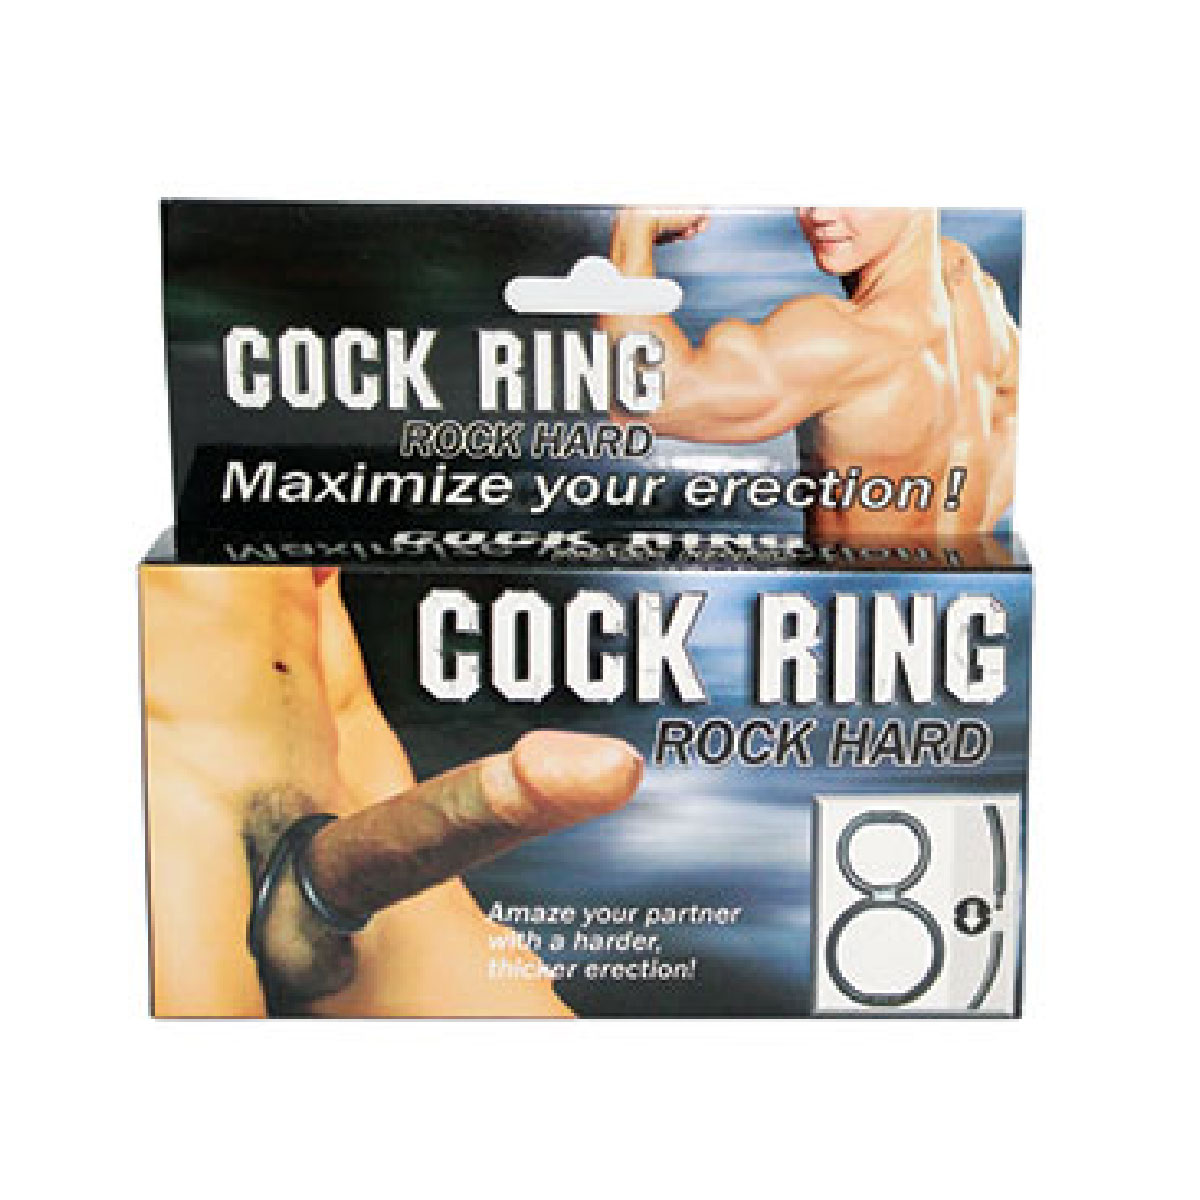 Cock Ring Rock Hard Testis ve Penis Kelepesi L-BI-026014